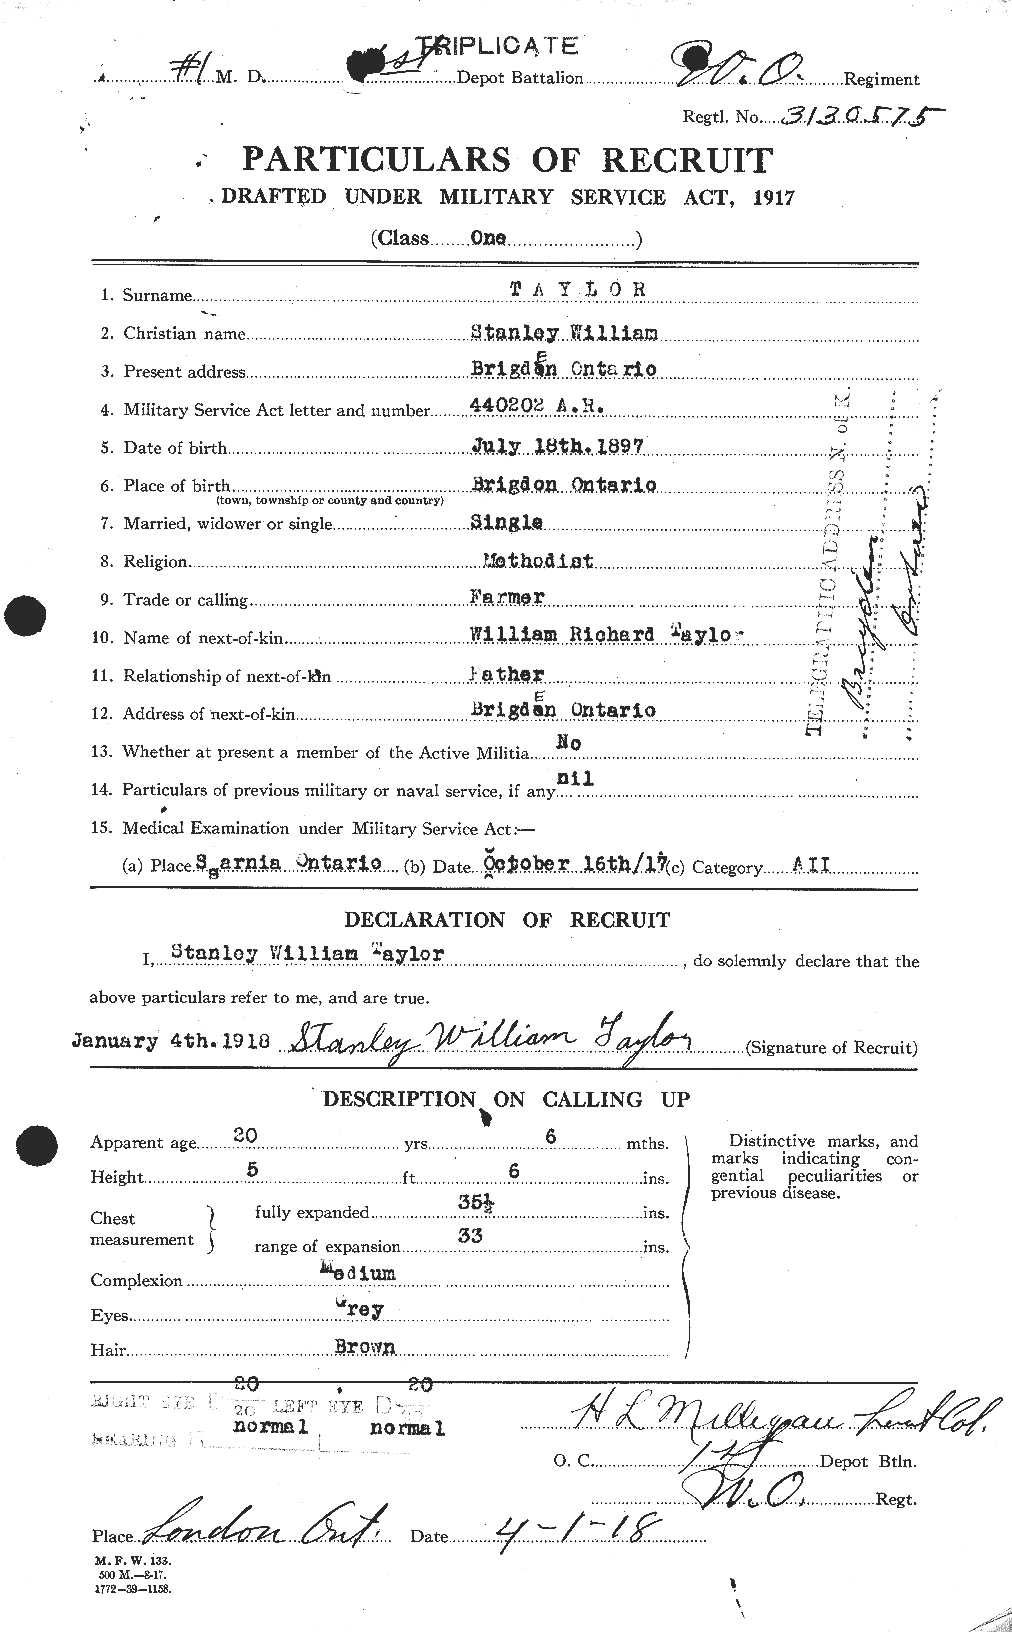 Dossiers du Personnel de la Première Guerre mondiale - CEC 627927a